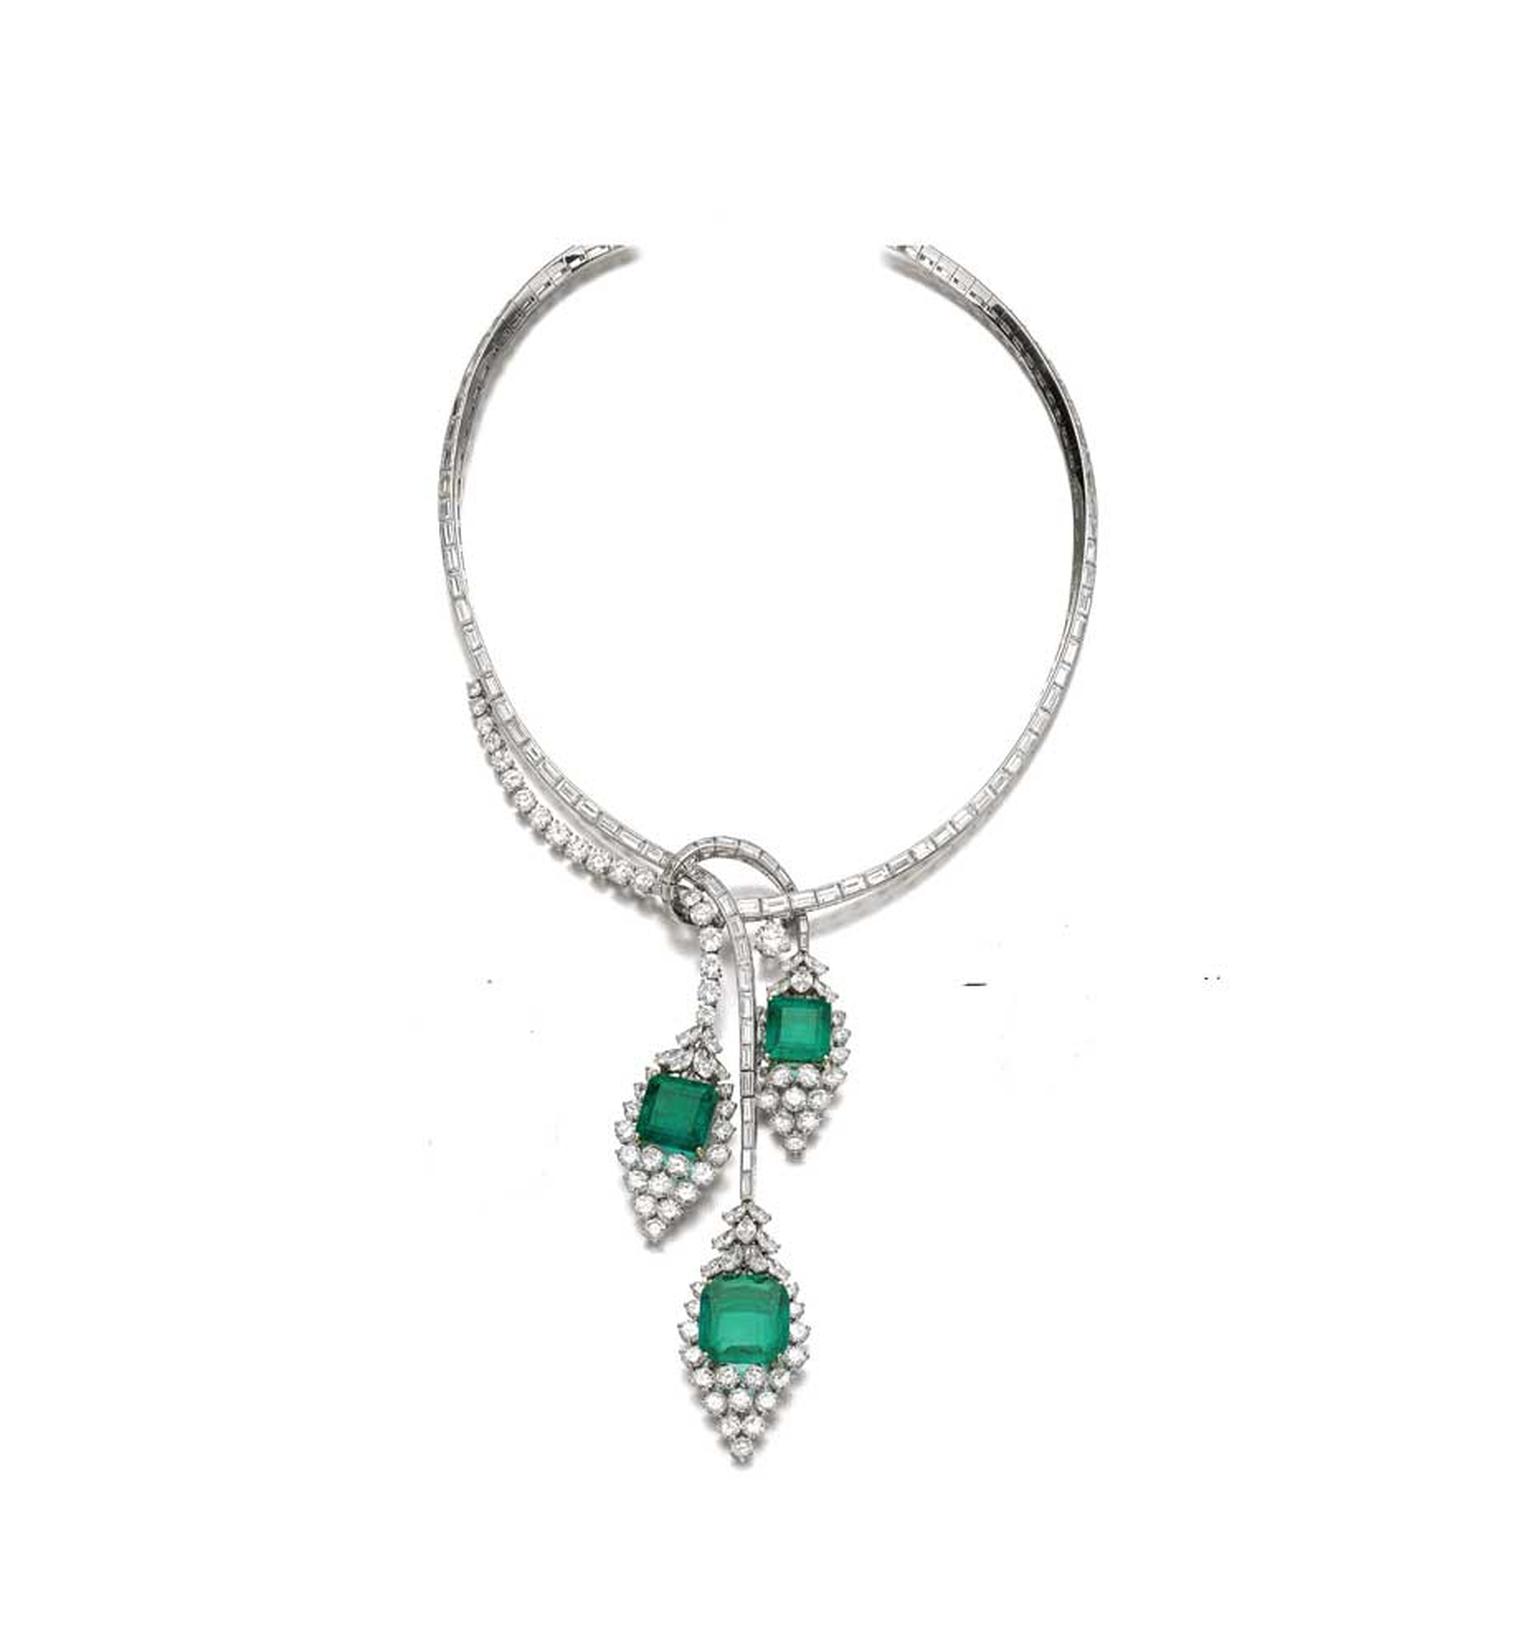 Emerald and diamond necklace (estimate: CHF35,000 - 225,000/$152,917 - 254,862)